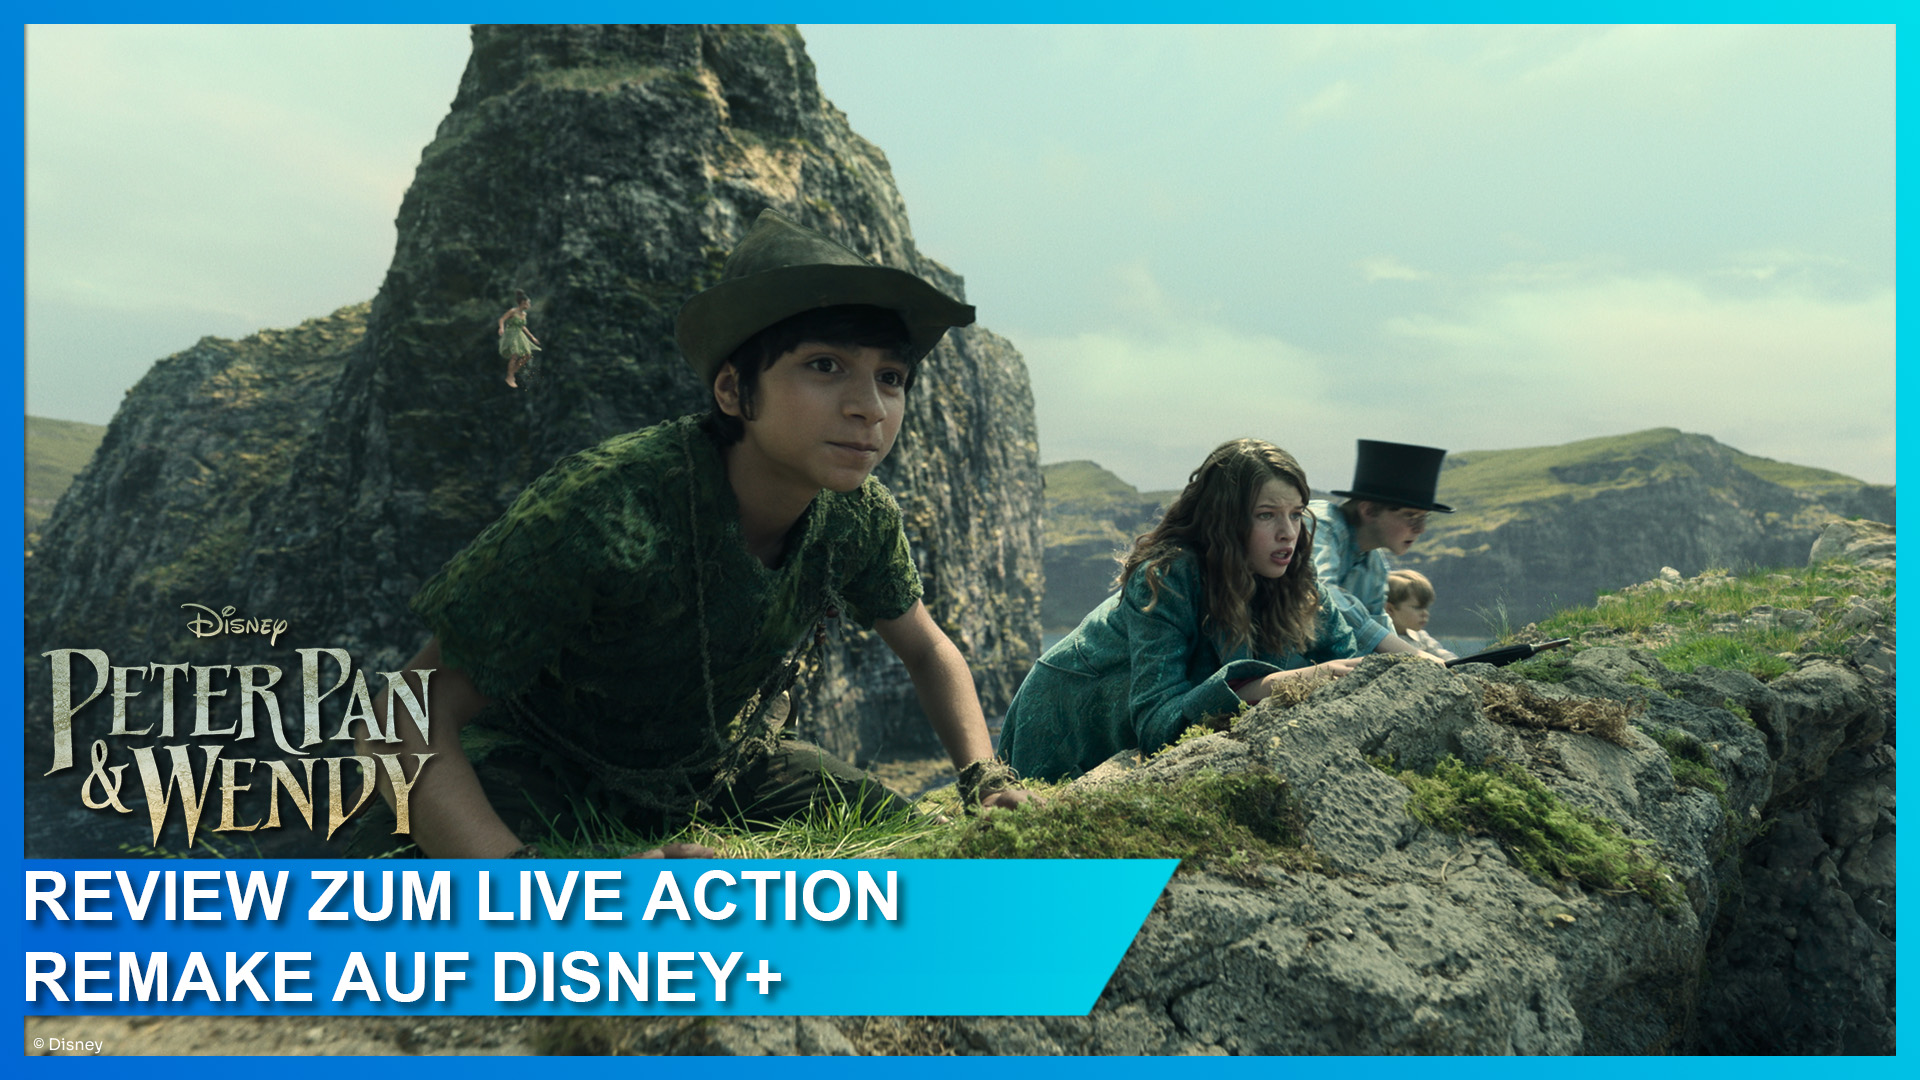 Review zum Peter Pan & Wendy Live Action Remake auf Disney+